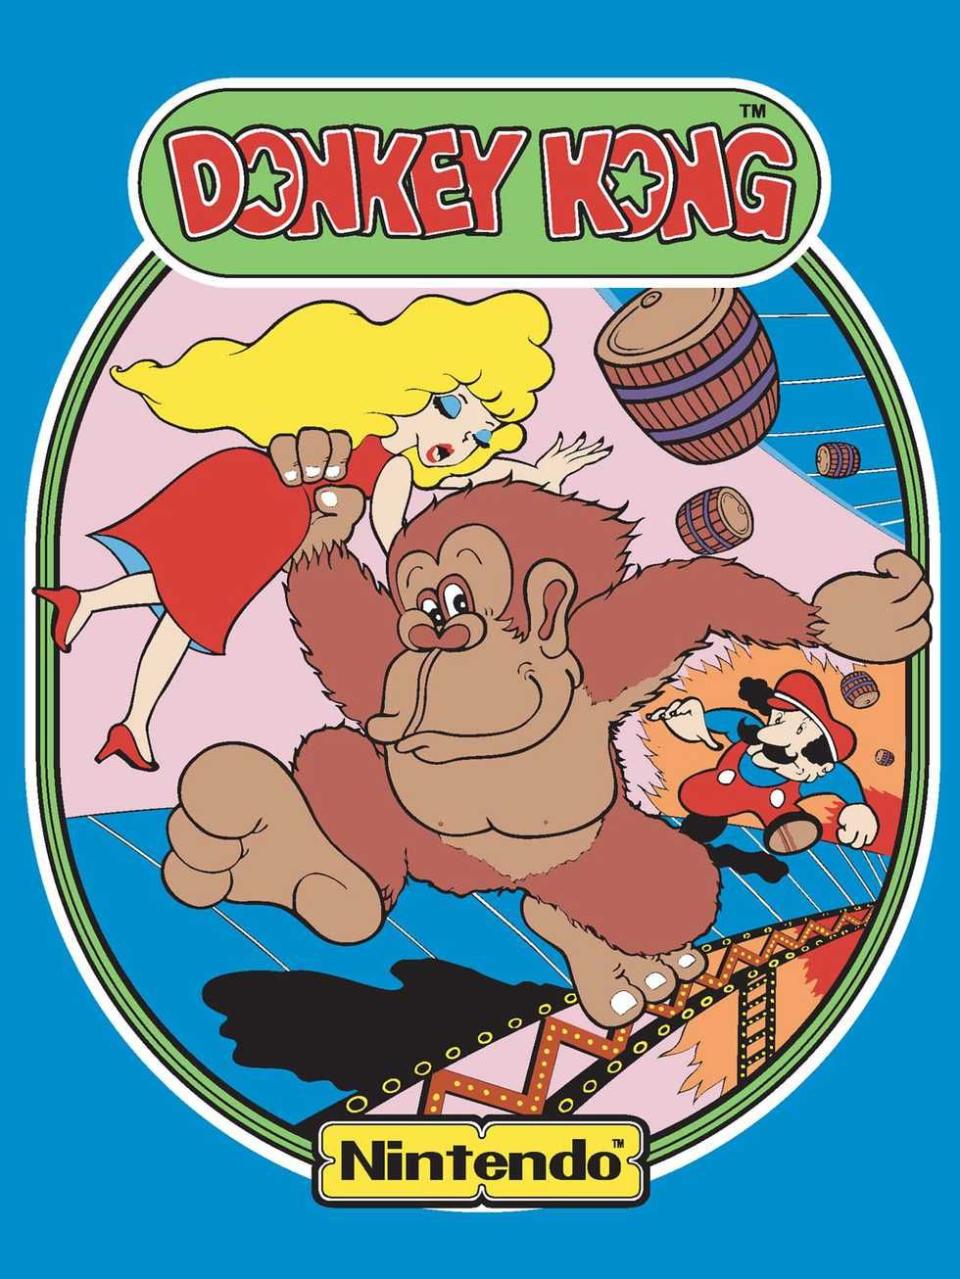 1981: Donkey Kong